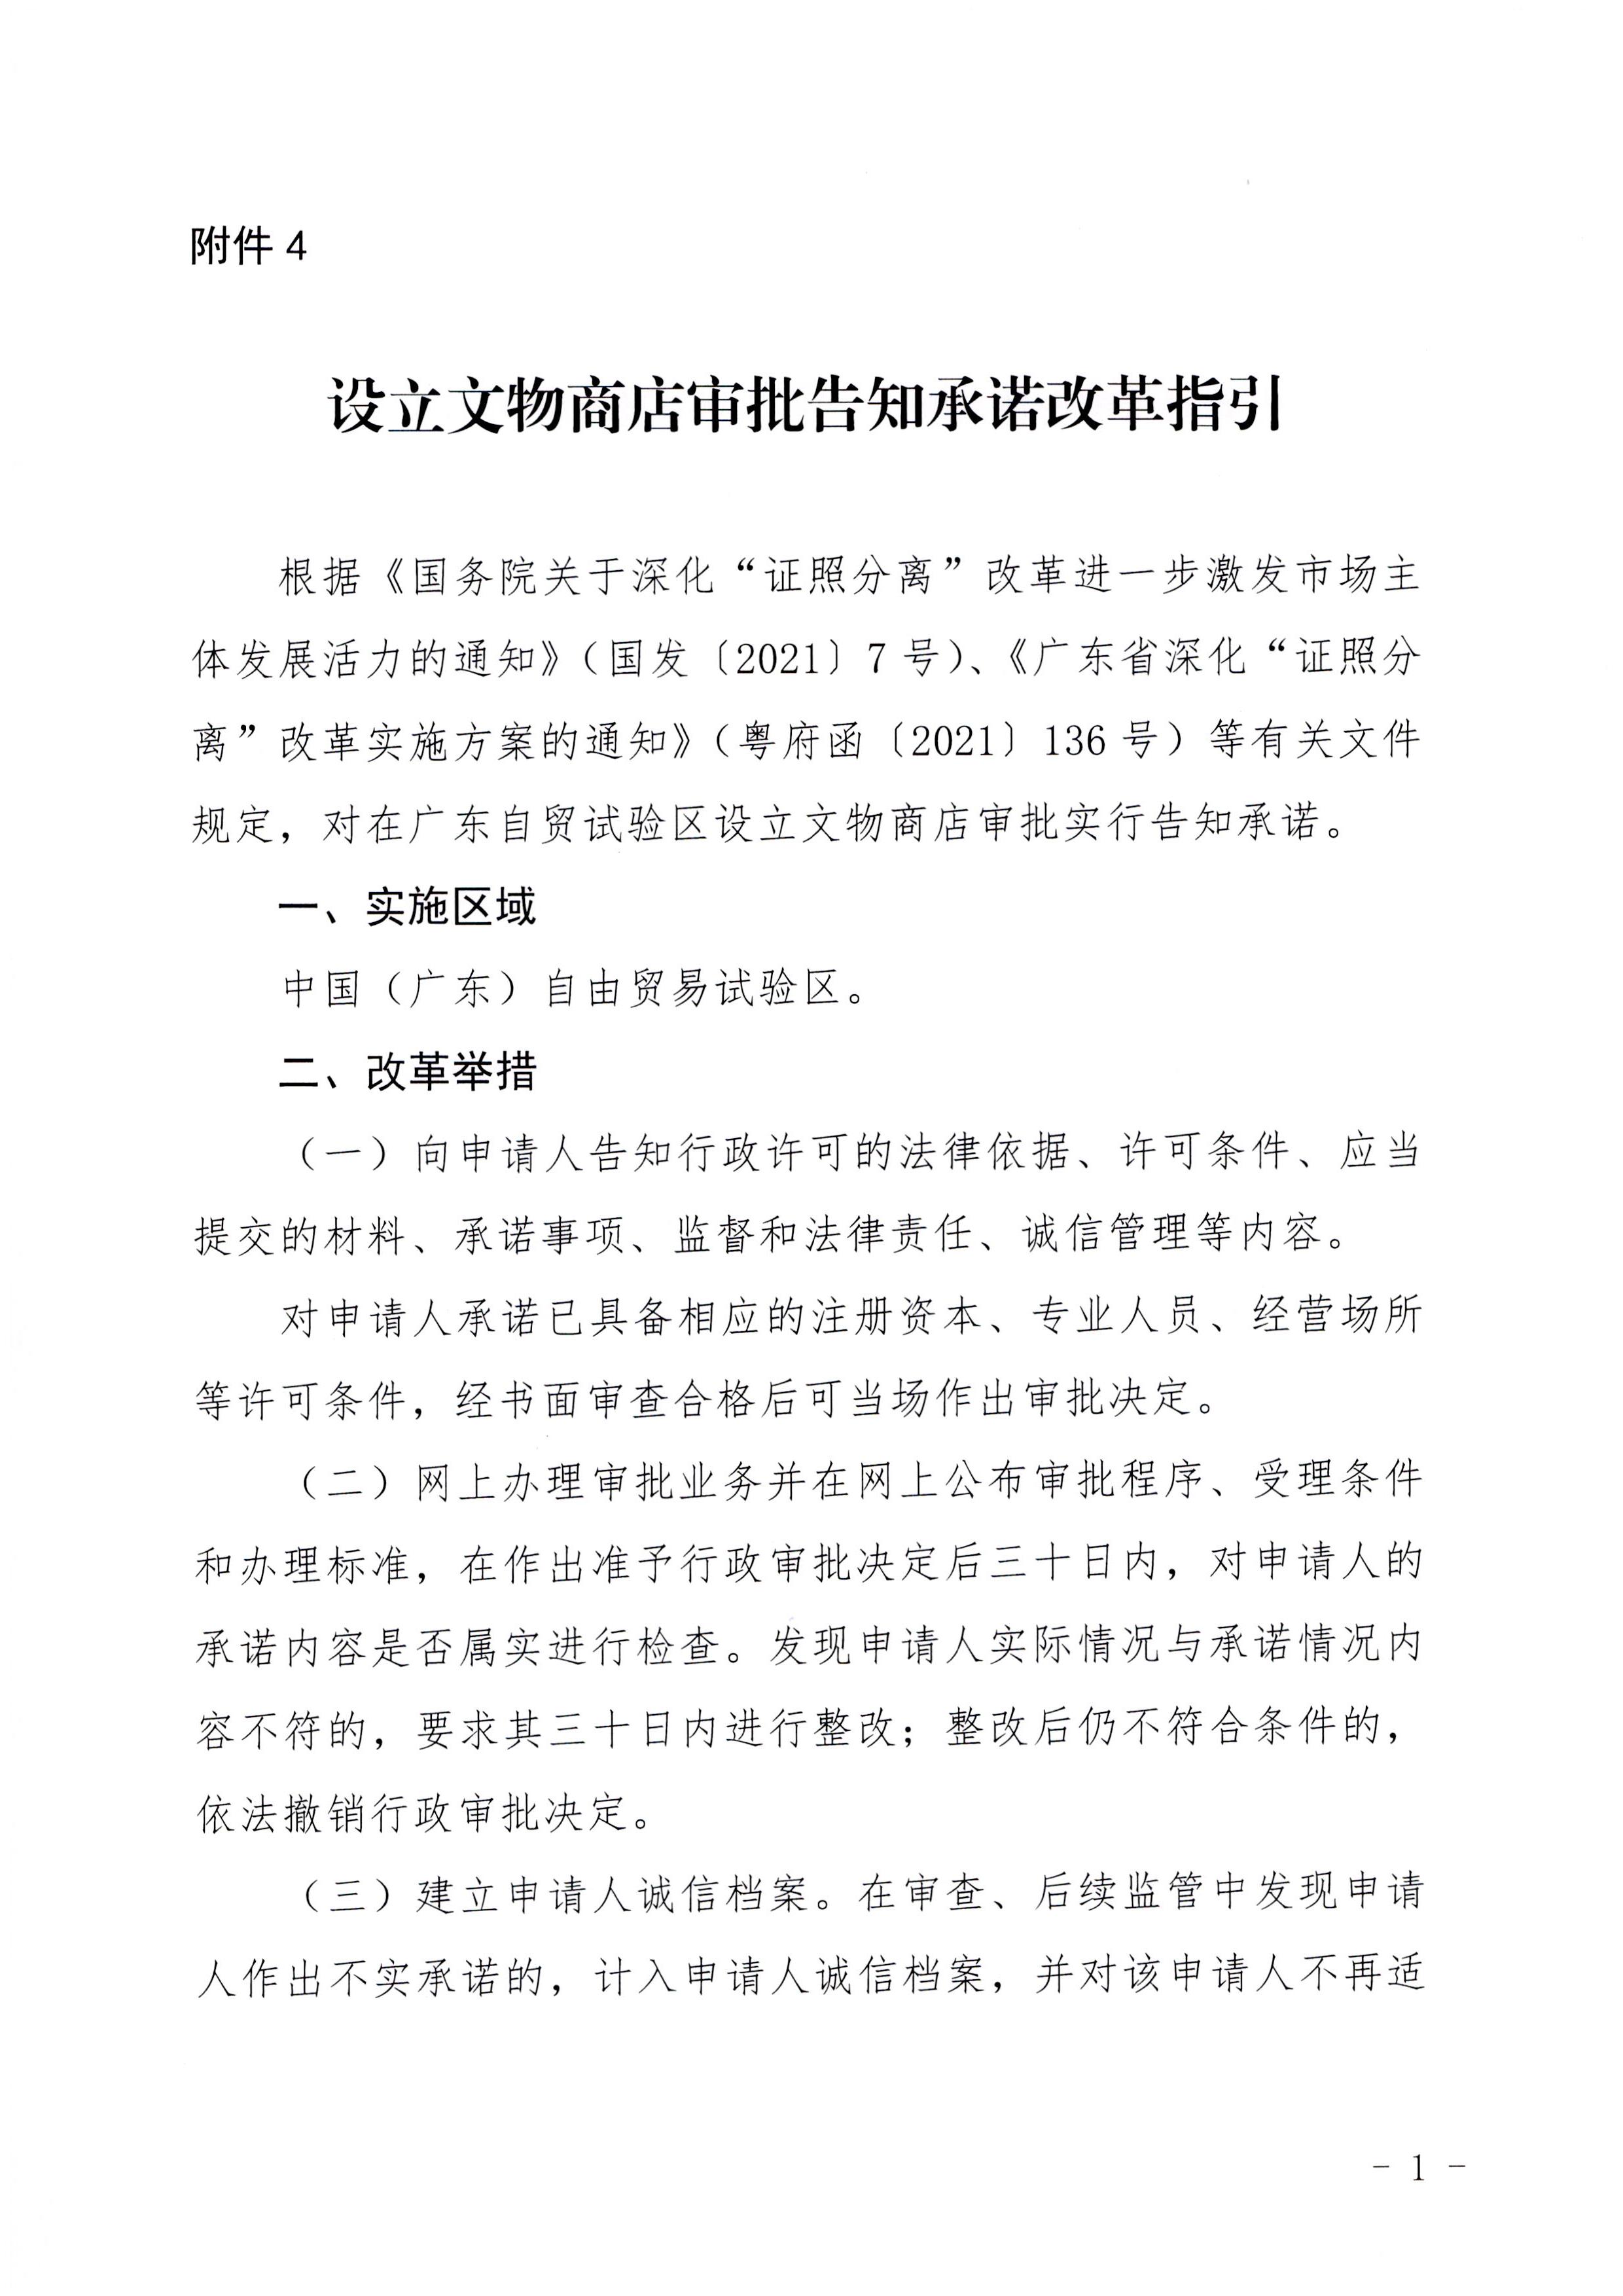 广东省文化和旅游厅印发证照分离改革实施方案的通知_页面_47.jpg